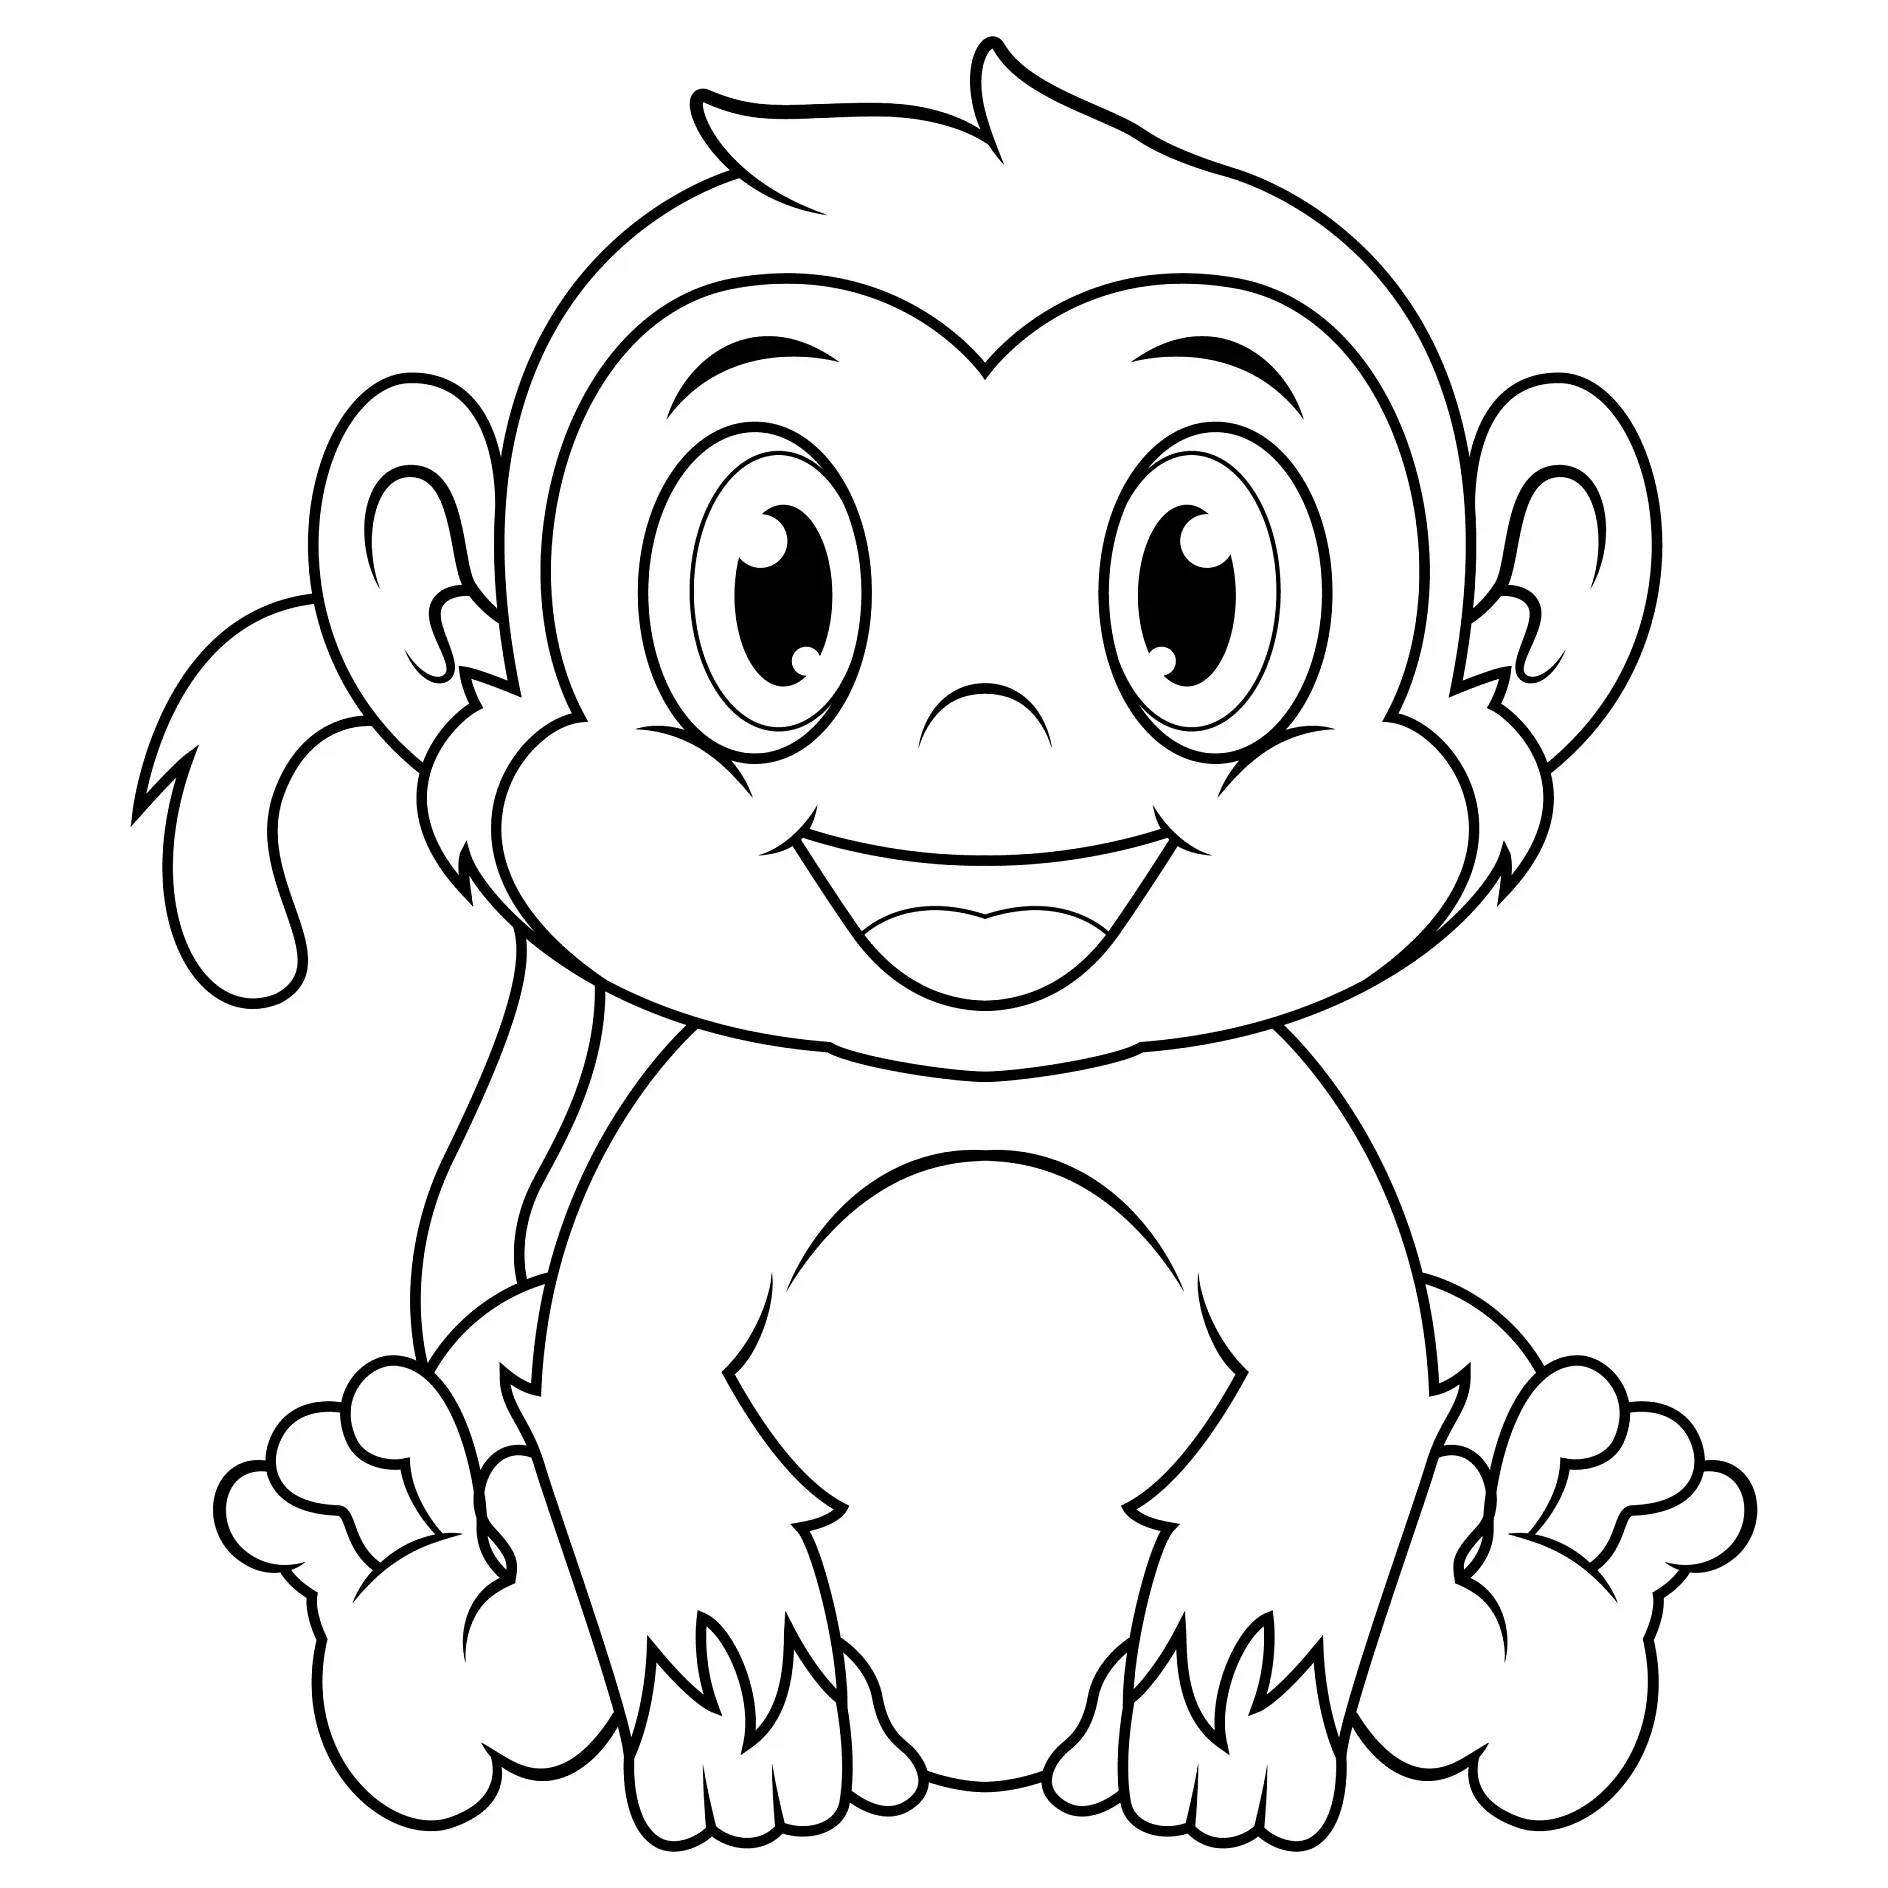 Ausmalbild Affe sitzt lächelnd und schaut nach vorne